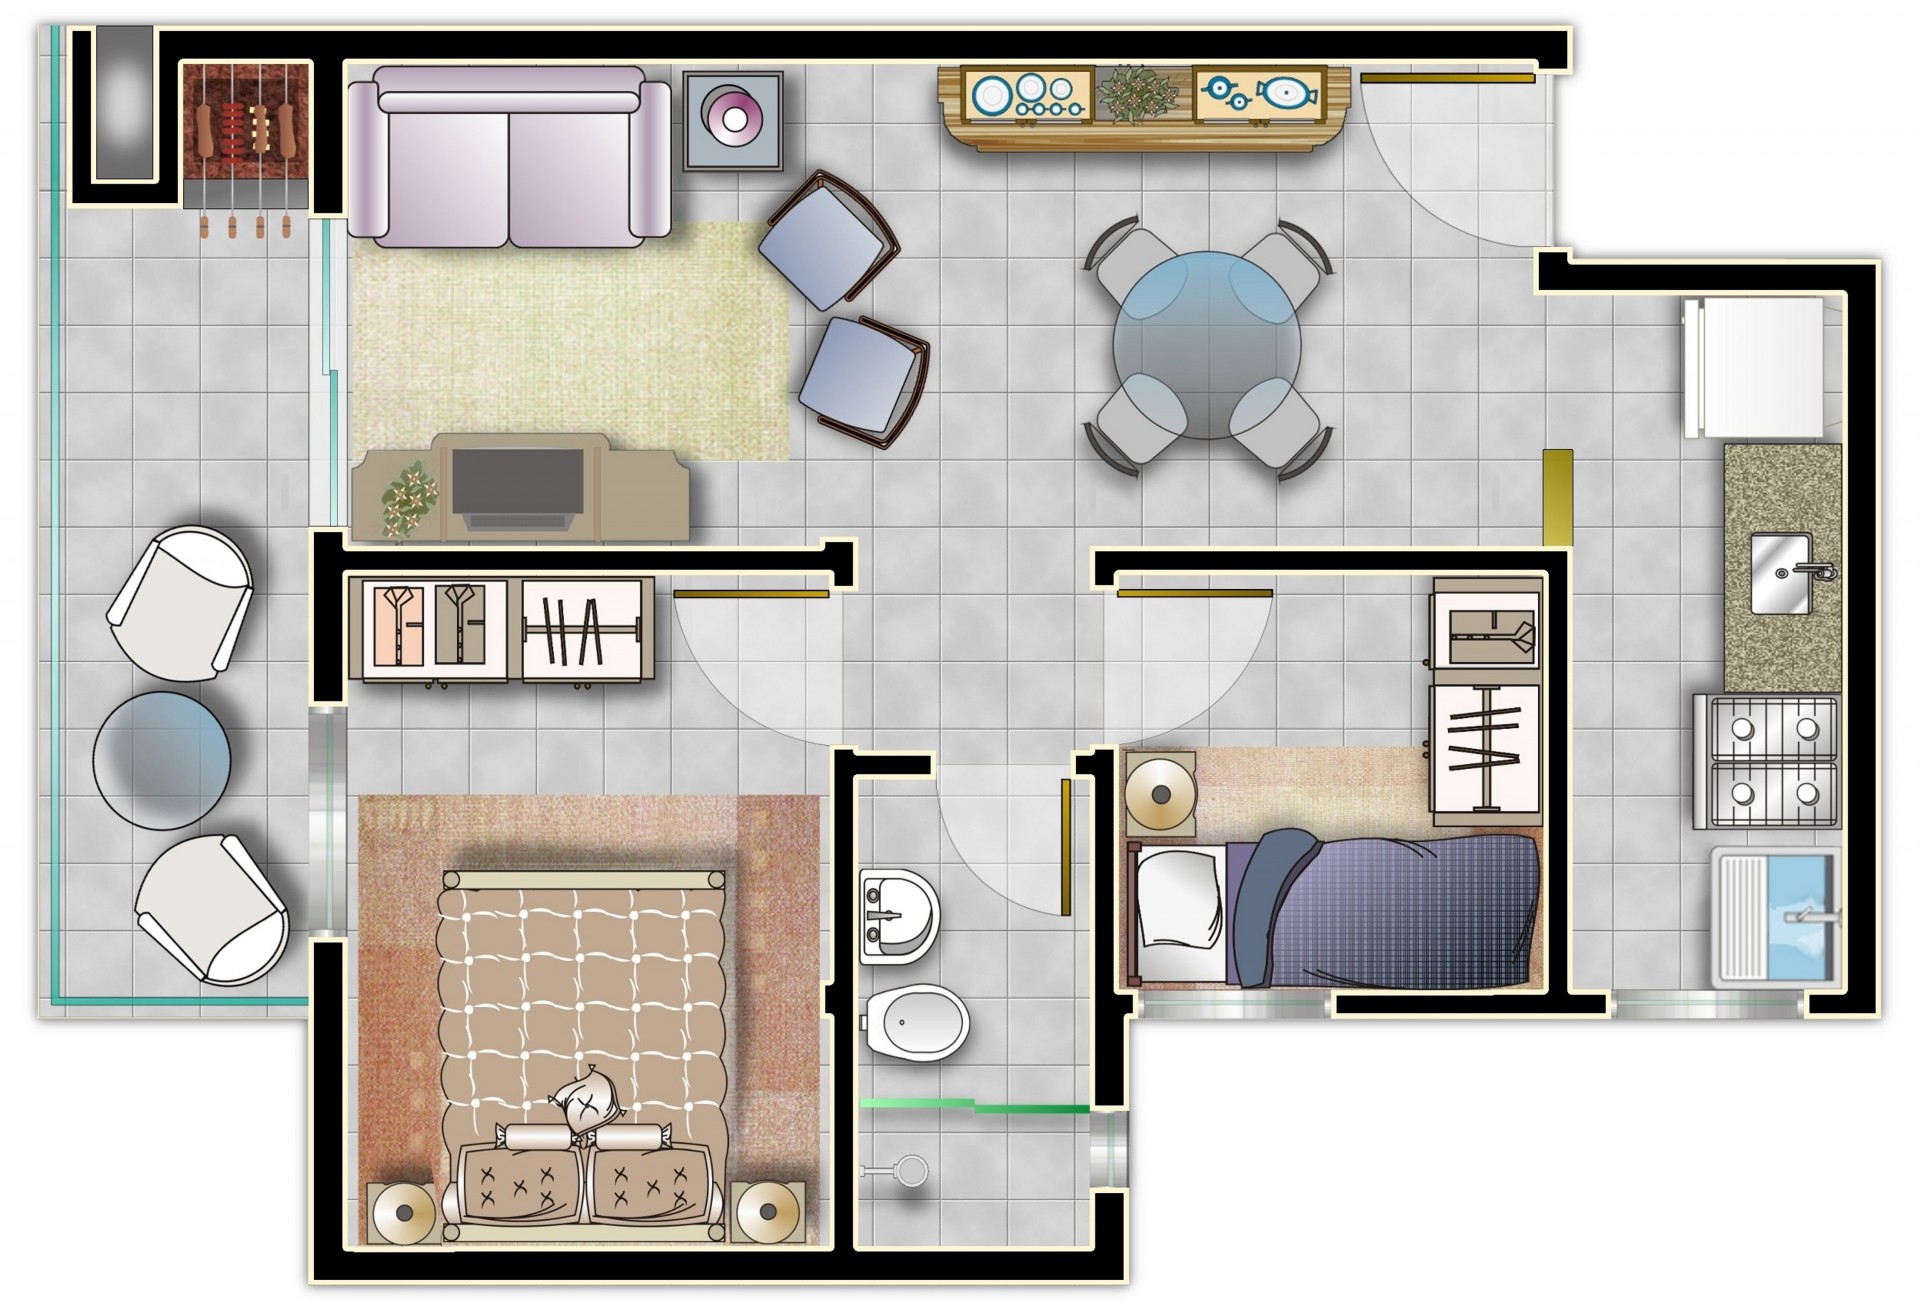 Apartamento com 2 dormitórios - Frente